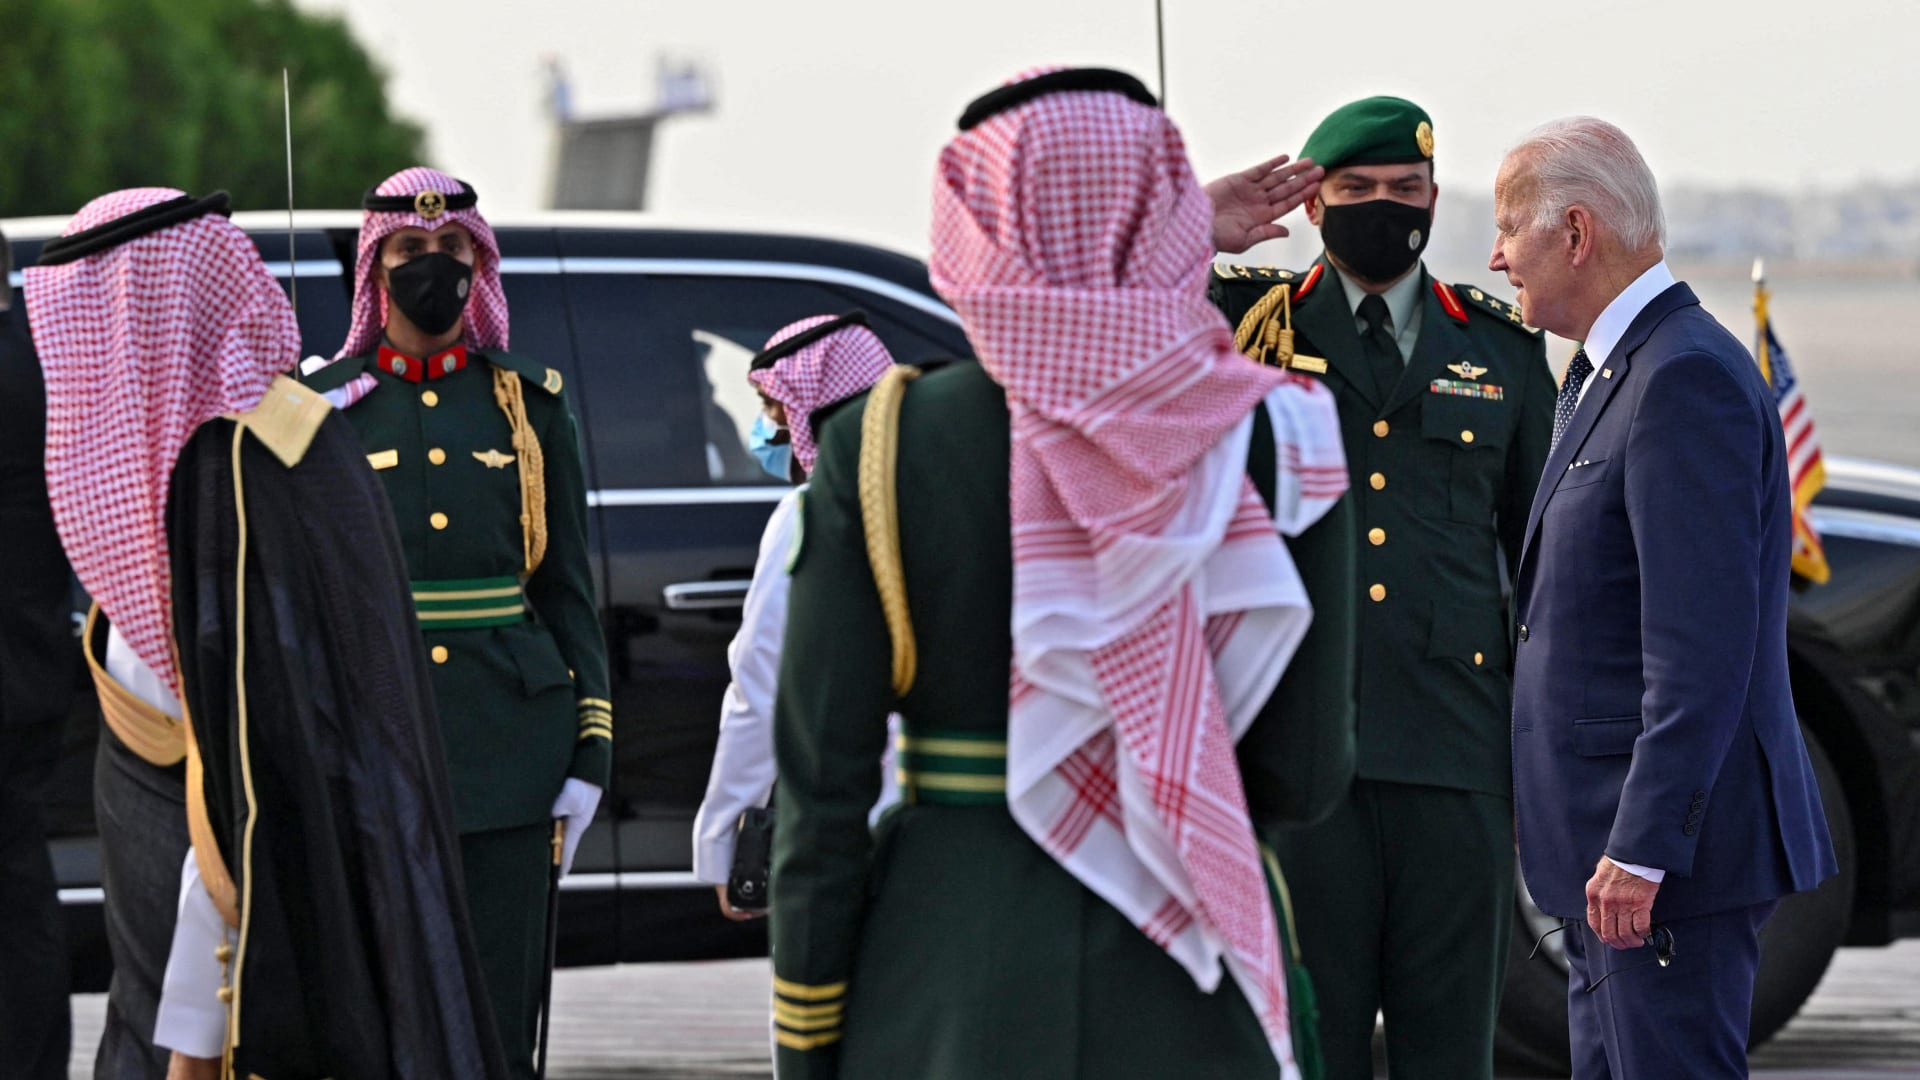 شاهد سير بايدن بجانب محمد بن سلمان قبيل مصافحة العاهل السعودي في قصر السلام